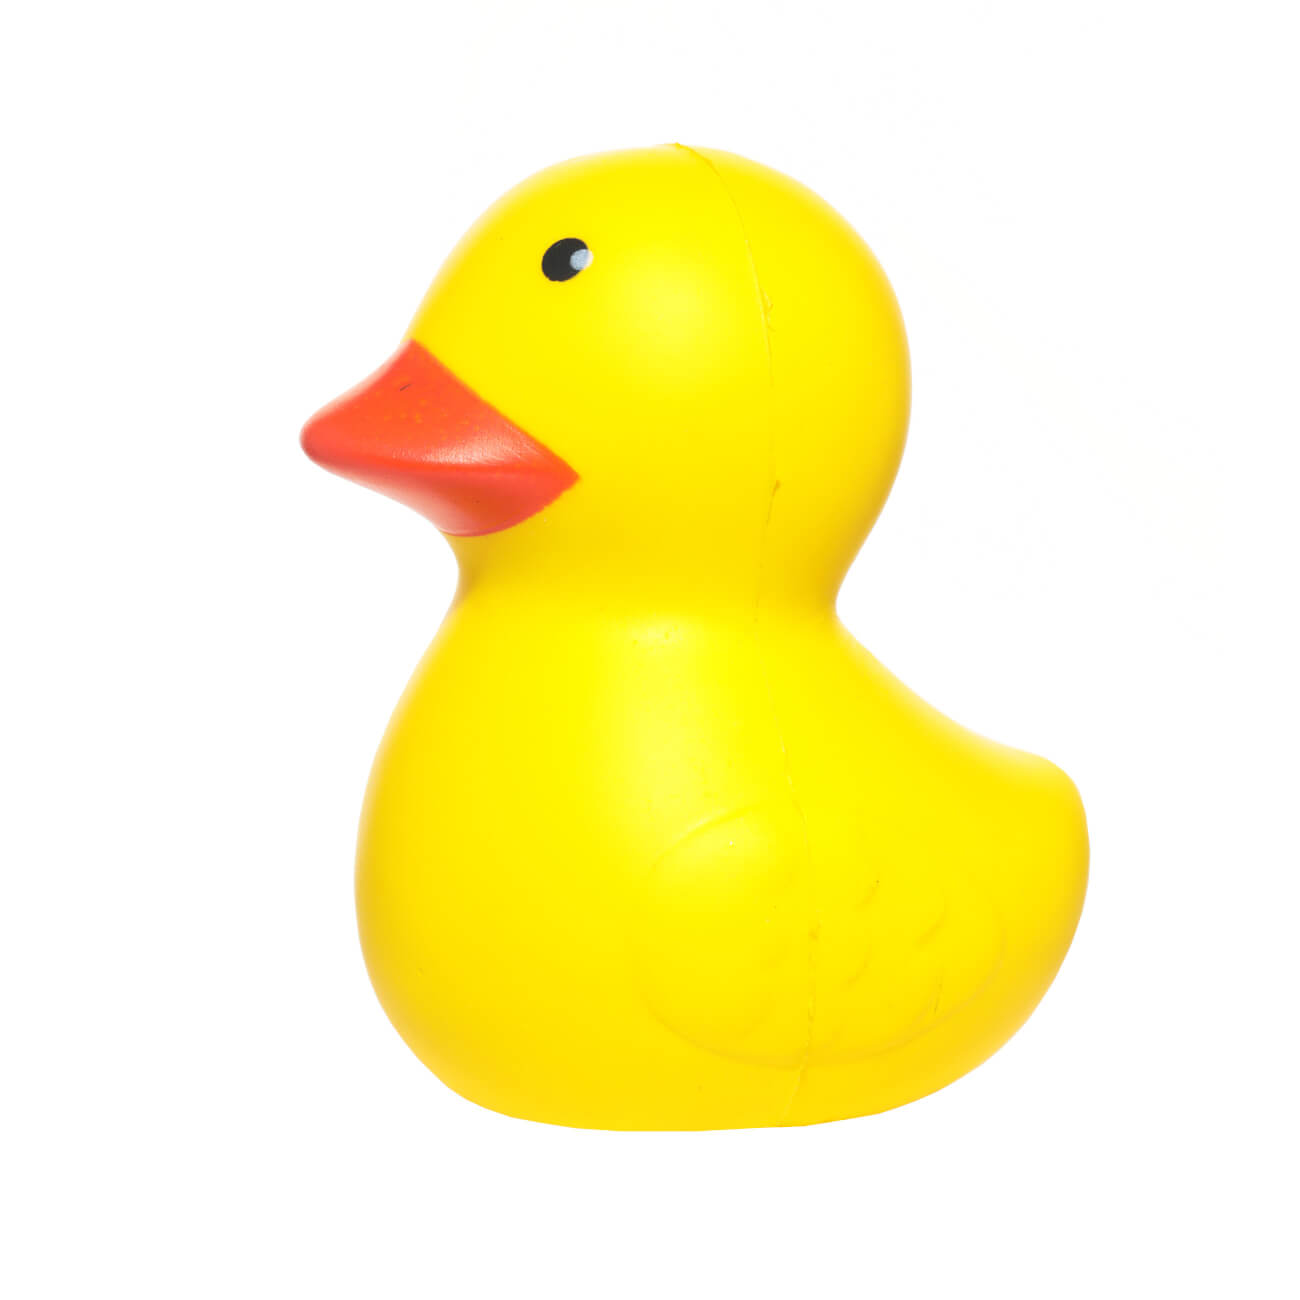 Игрушка-антистресс, 10 см, полиуретан, желтая, Уточка, Duck антистресс игрушка pop it резиновые пузырьки разно ный